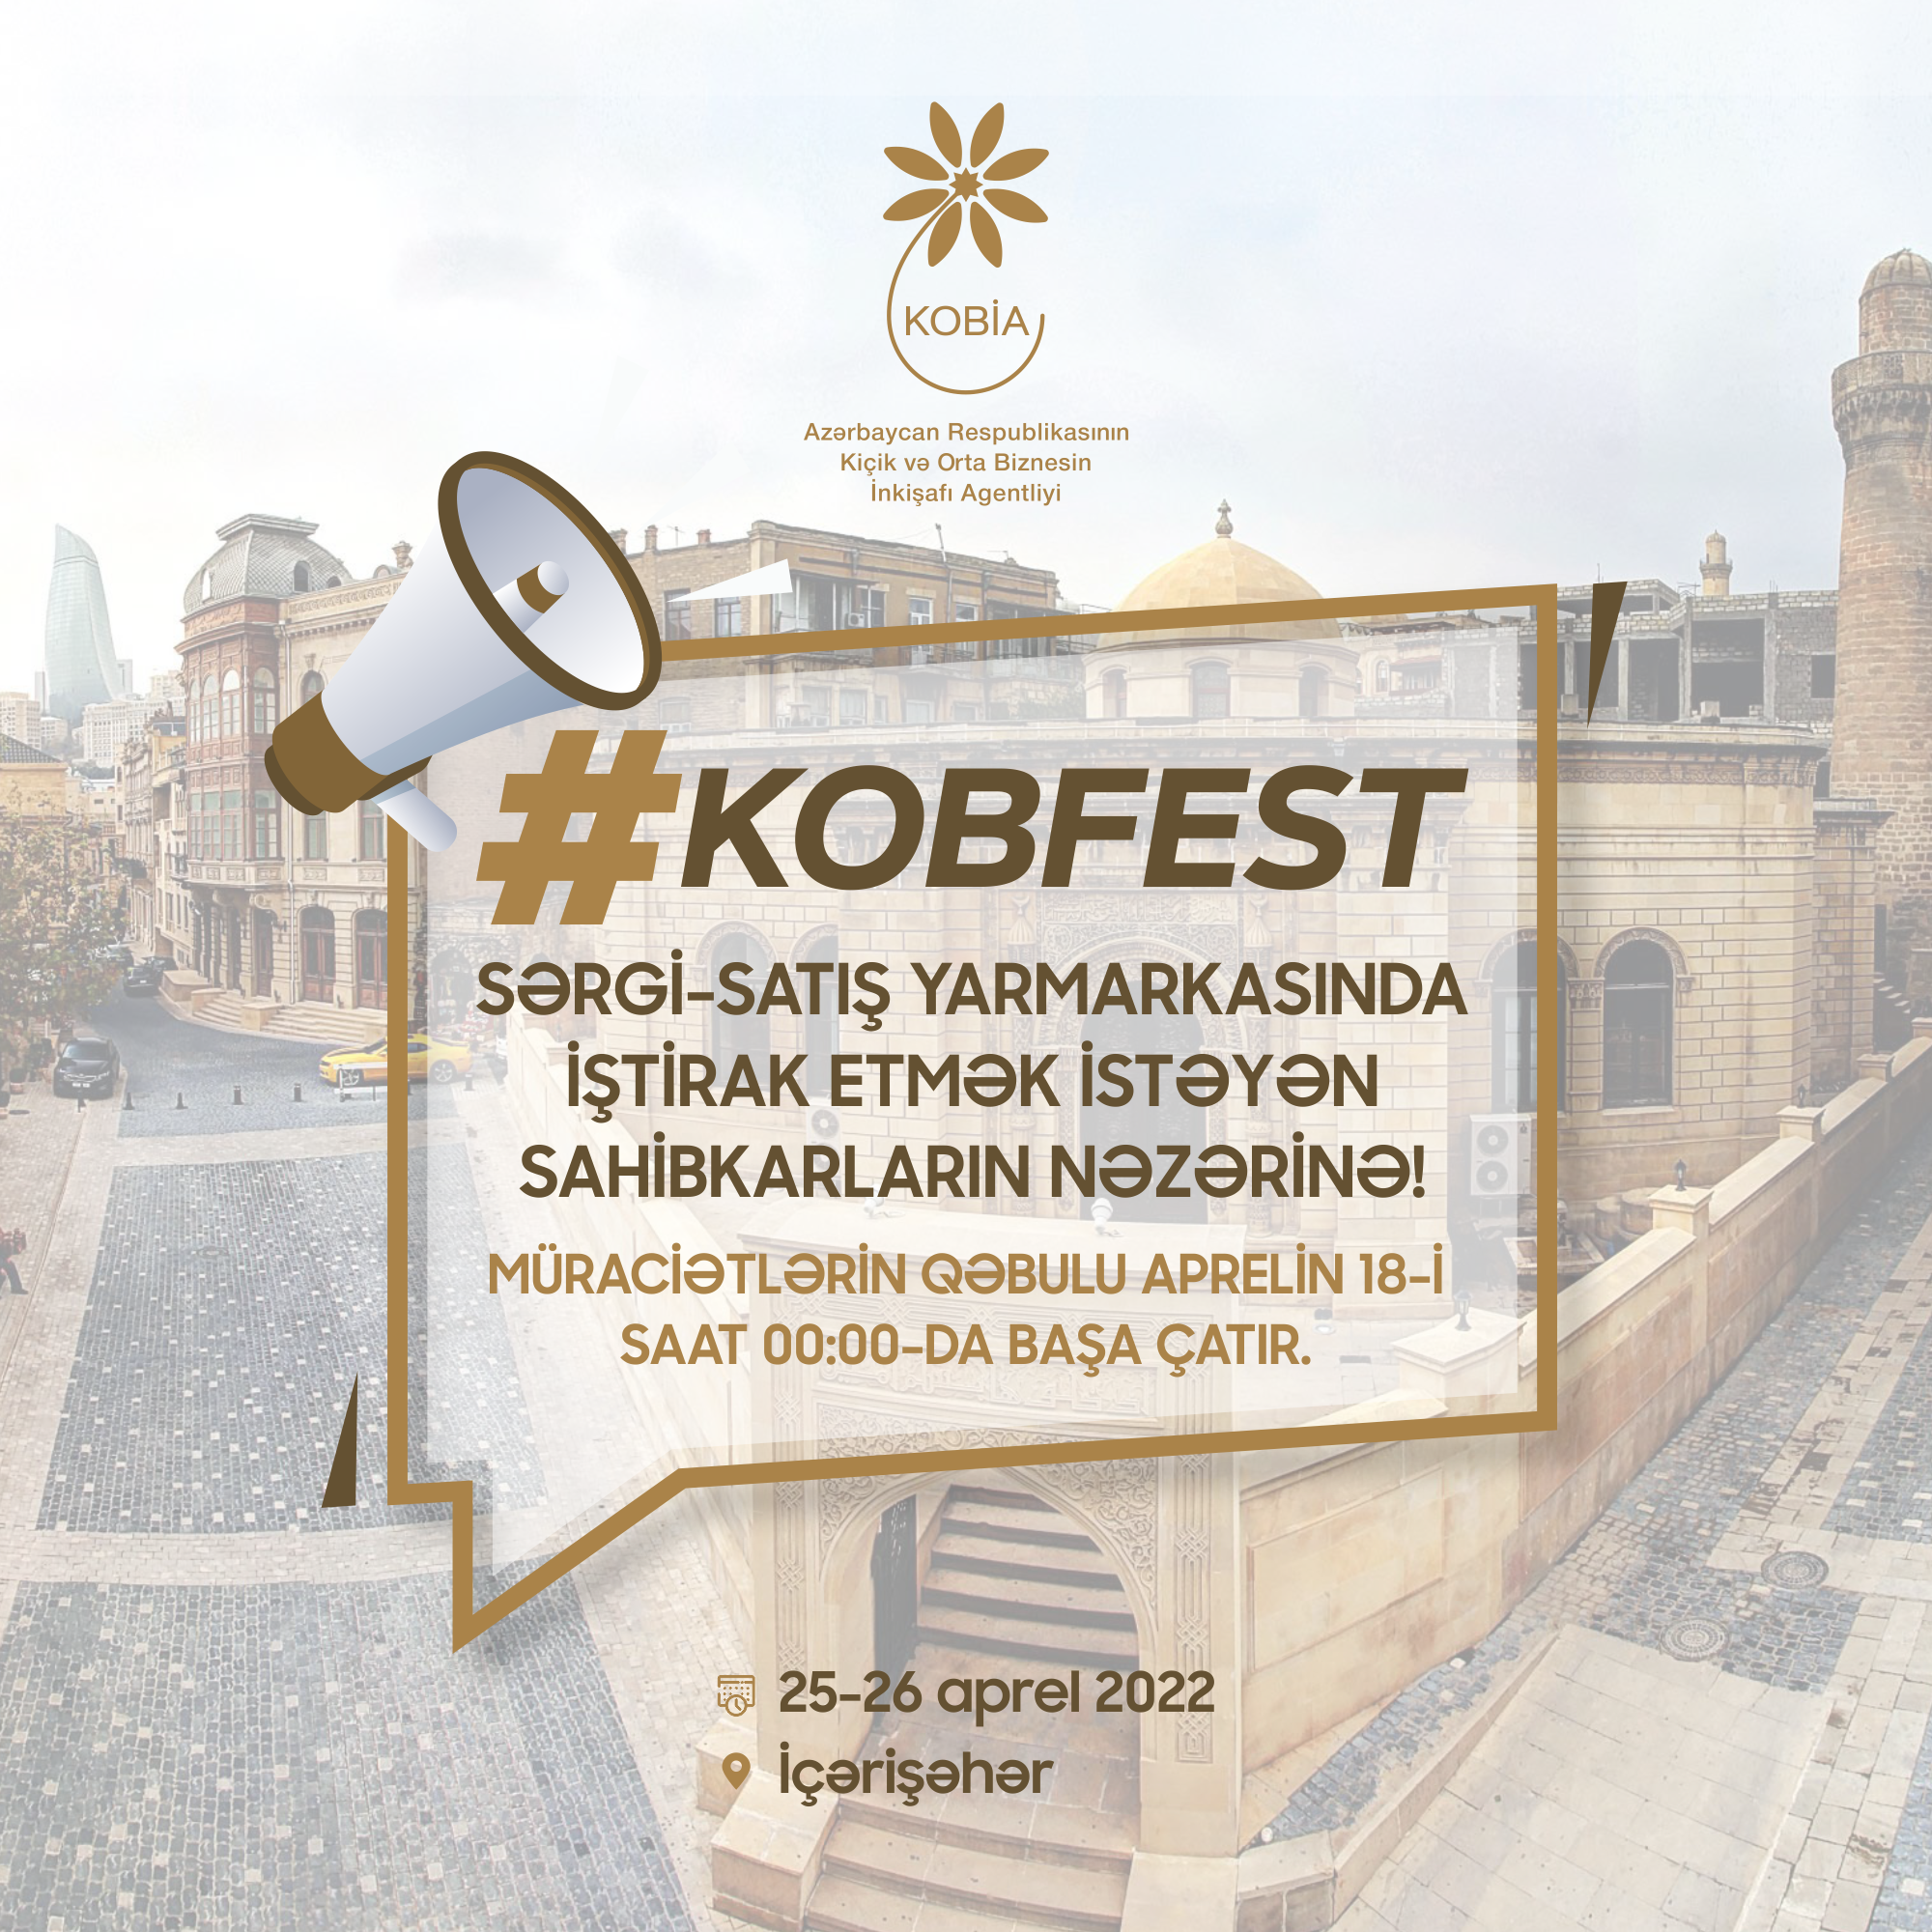 KOB Fest - sərgi-satış yarmarkasında iştirak etmək istəyən sahibkarların nəzərinə!